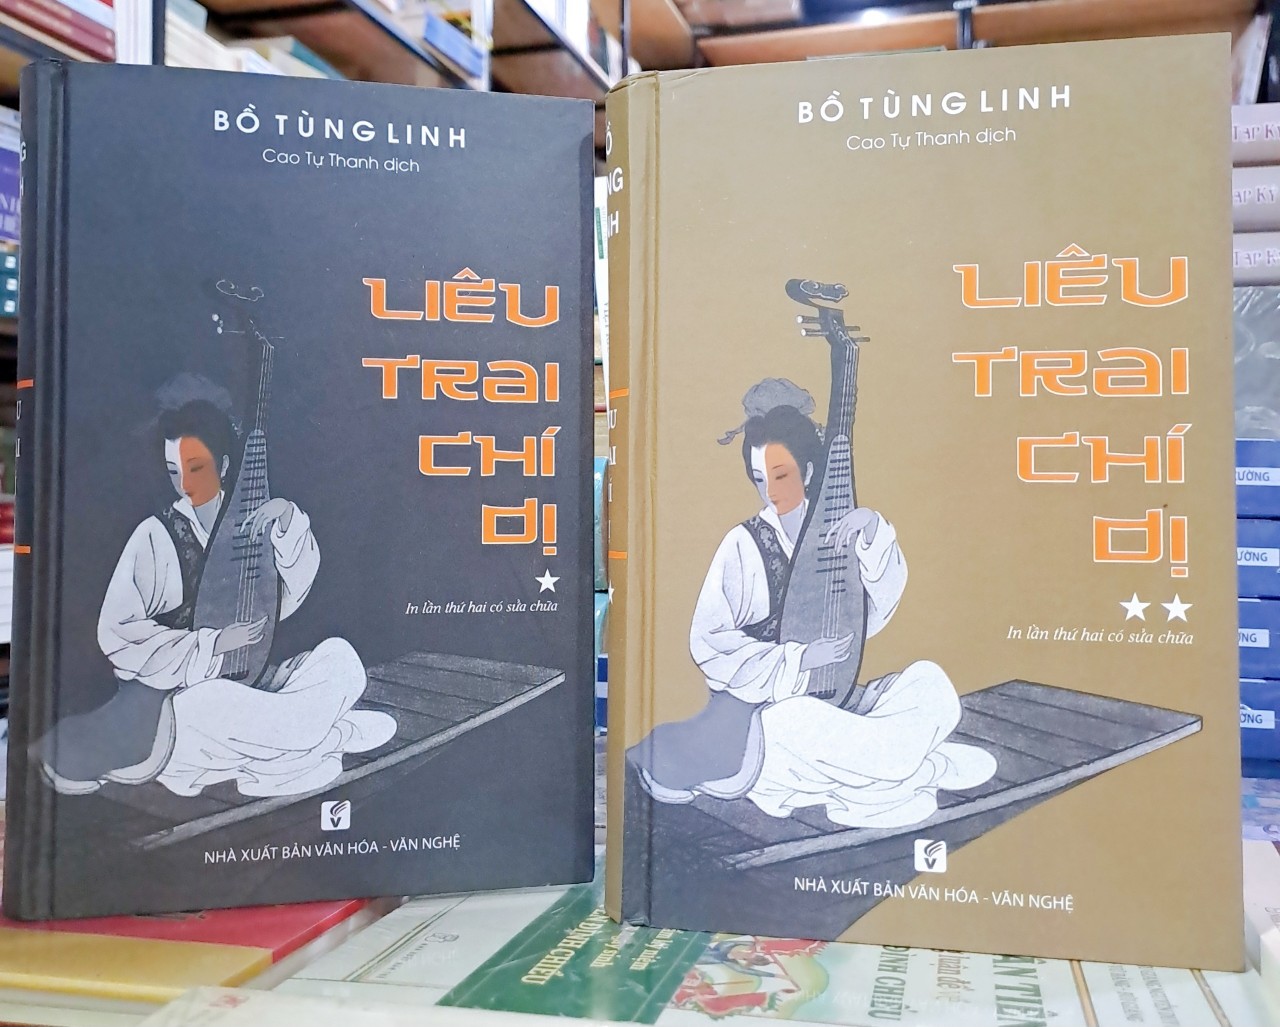 Bộ Liêu trai chí dị (2 tập) Bồ Tùng Linh - Cao Tự Thanh dịch